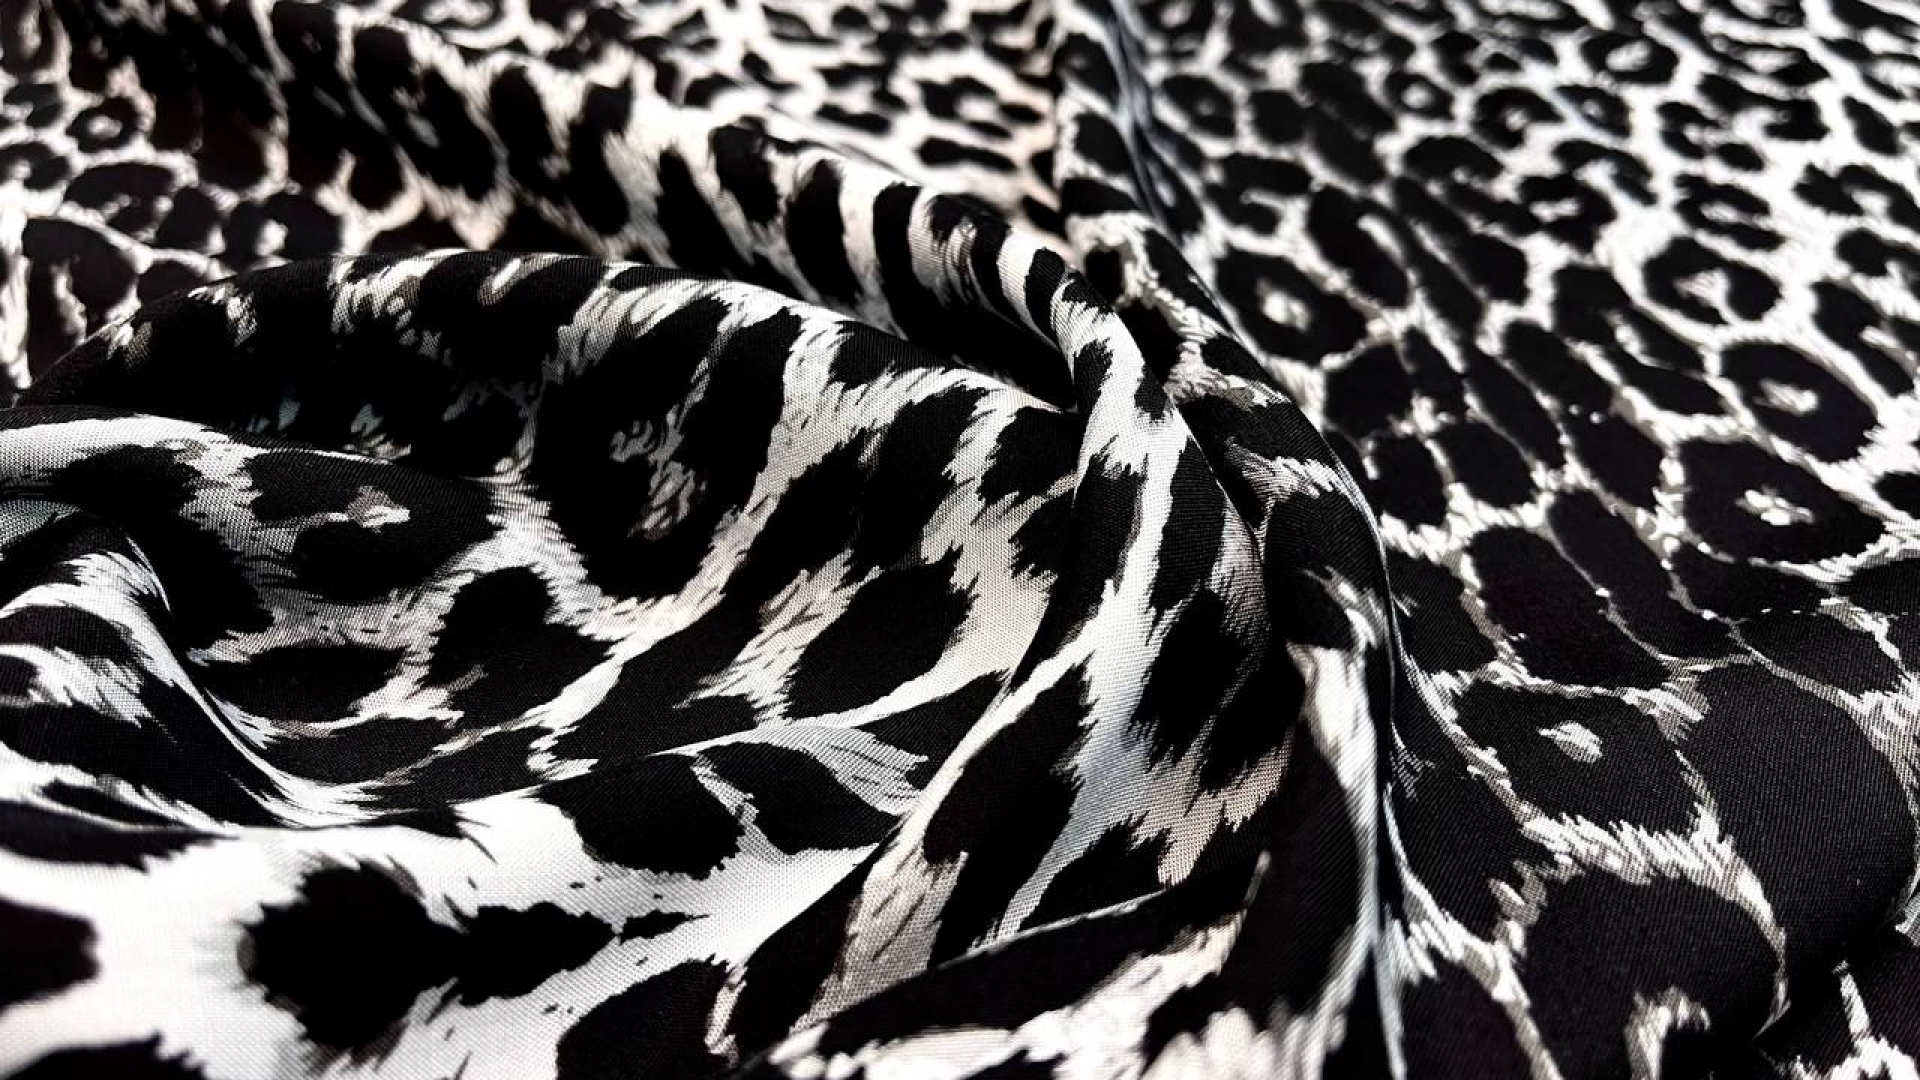 Вискозный штапель с леопардовым принтом в черно-серой гамме. Идеален для летних свободных платьев, рубашек и топов.